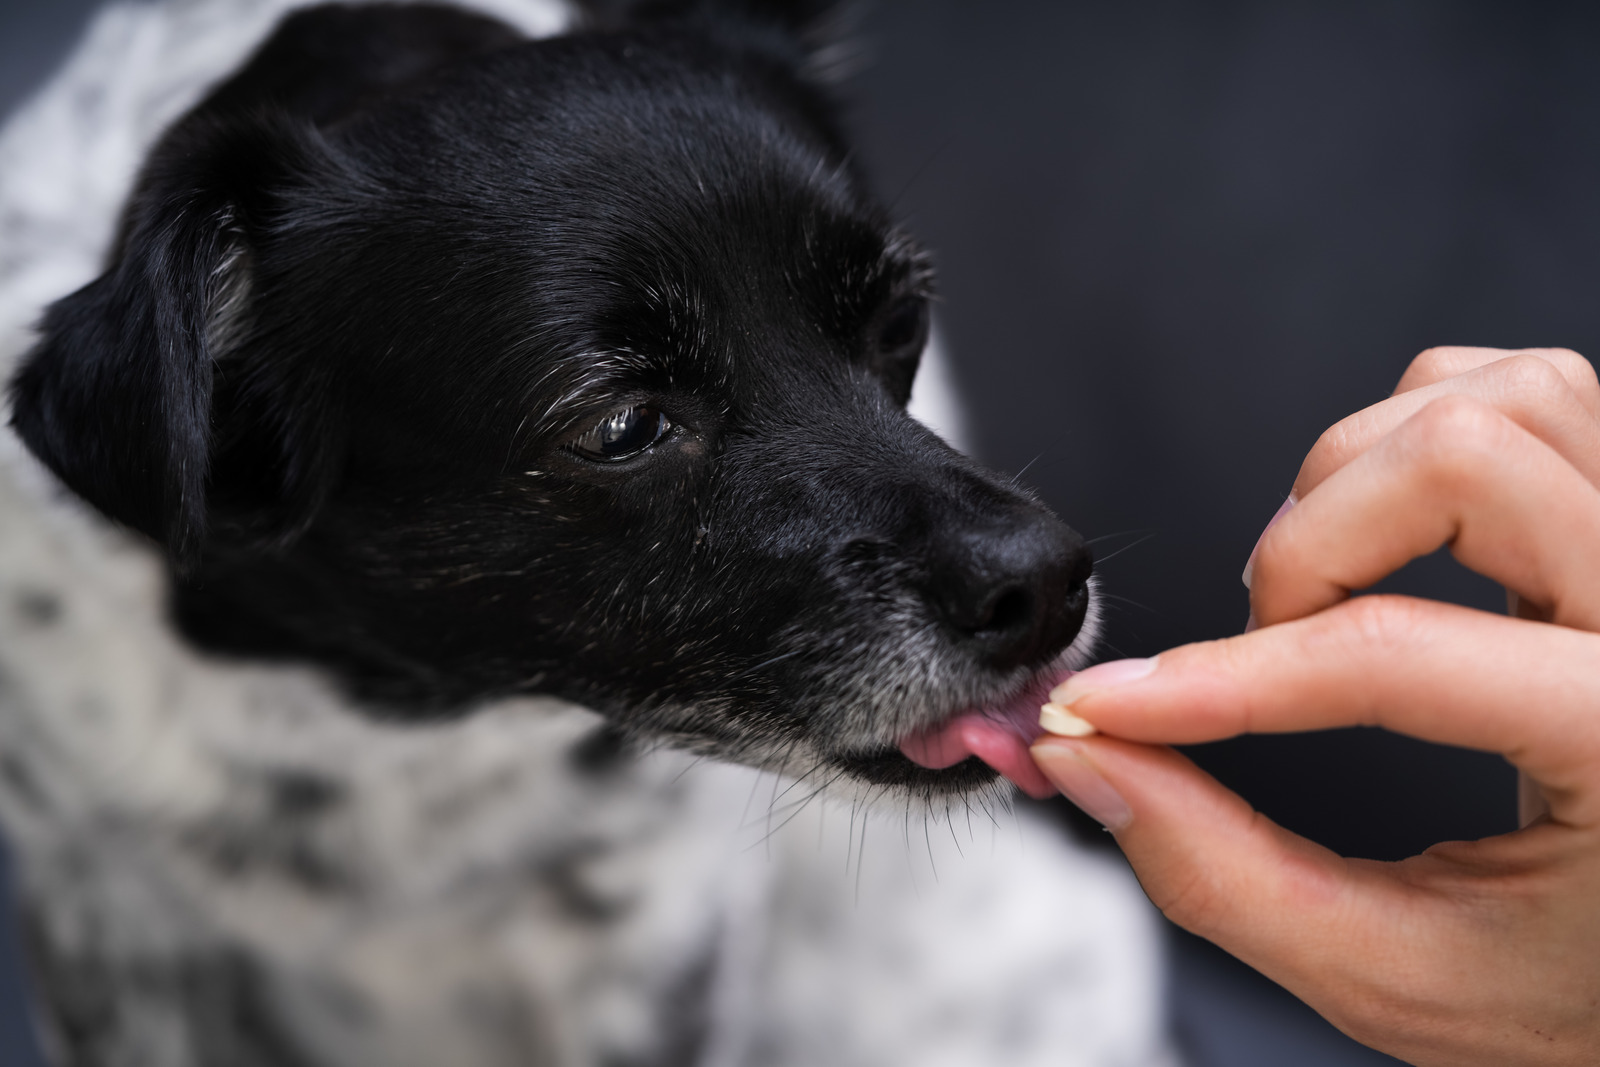 oude zwarte hond met gewrichtsproblemen krijgt supplement met glucosamine